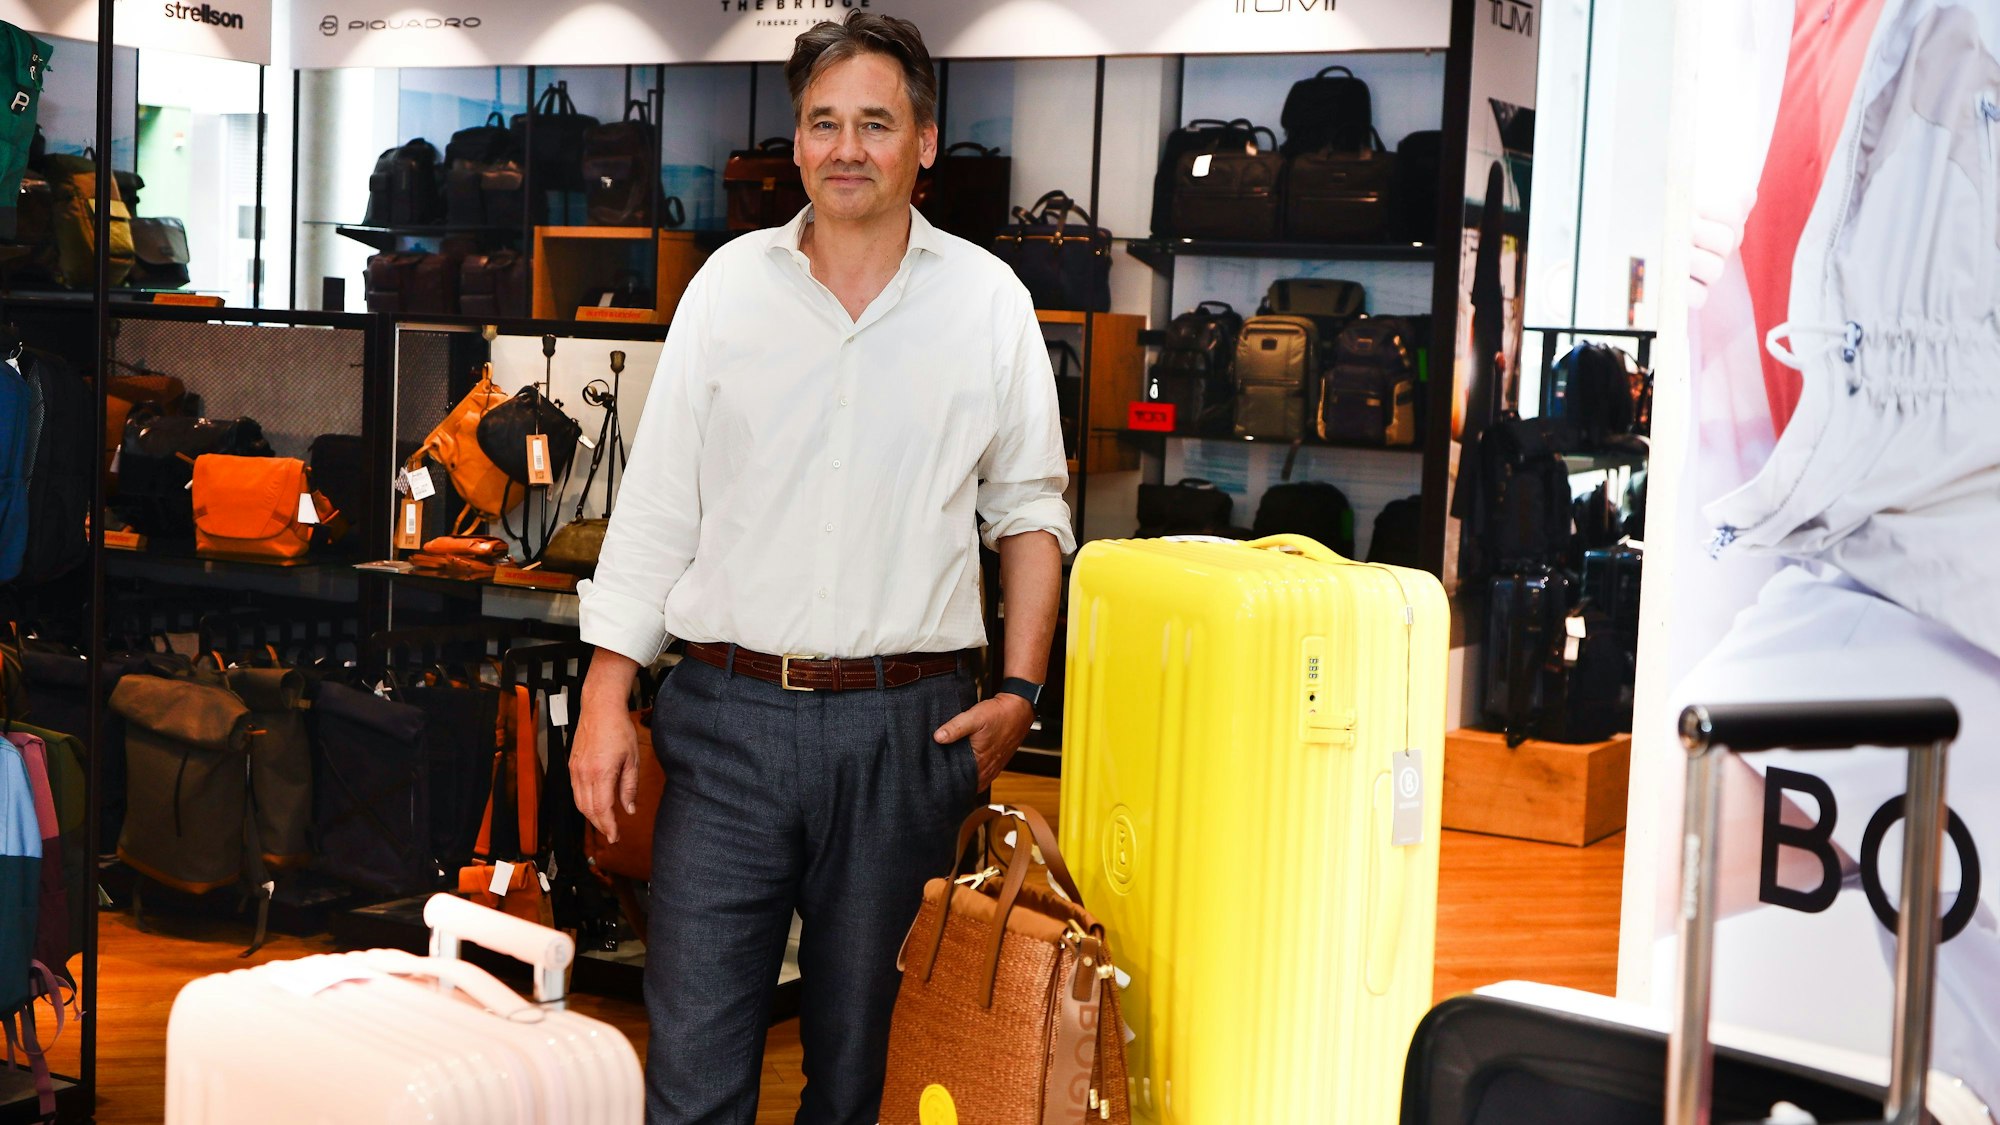 Martin Voegels im Laden umgeben von Koffern und Taschen